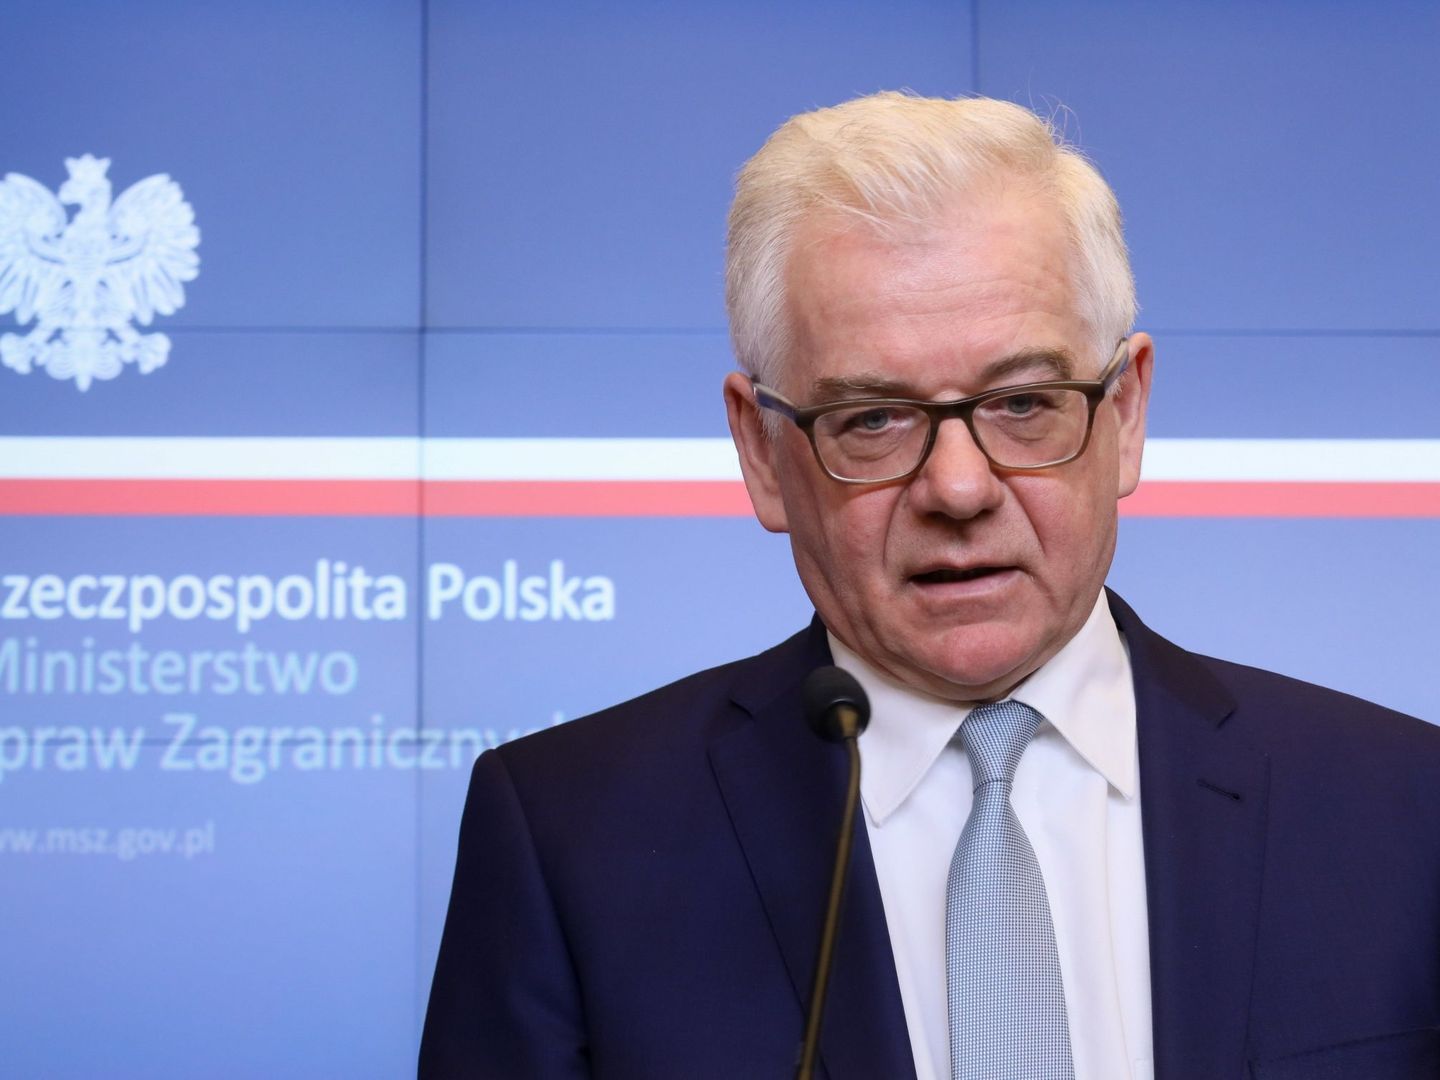 El ministro de Exteriores polaco, Jacek Czaputowicz, ofrece una rueda de prensa en Varsovia, explicando la calificación de 'persona non grata' para cuatro diplomáticos rusos. (EFE)